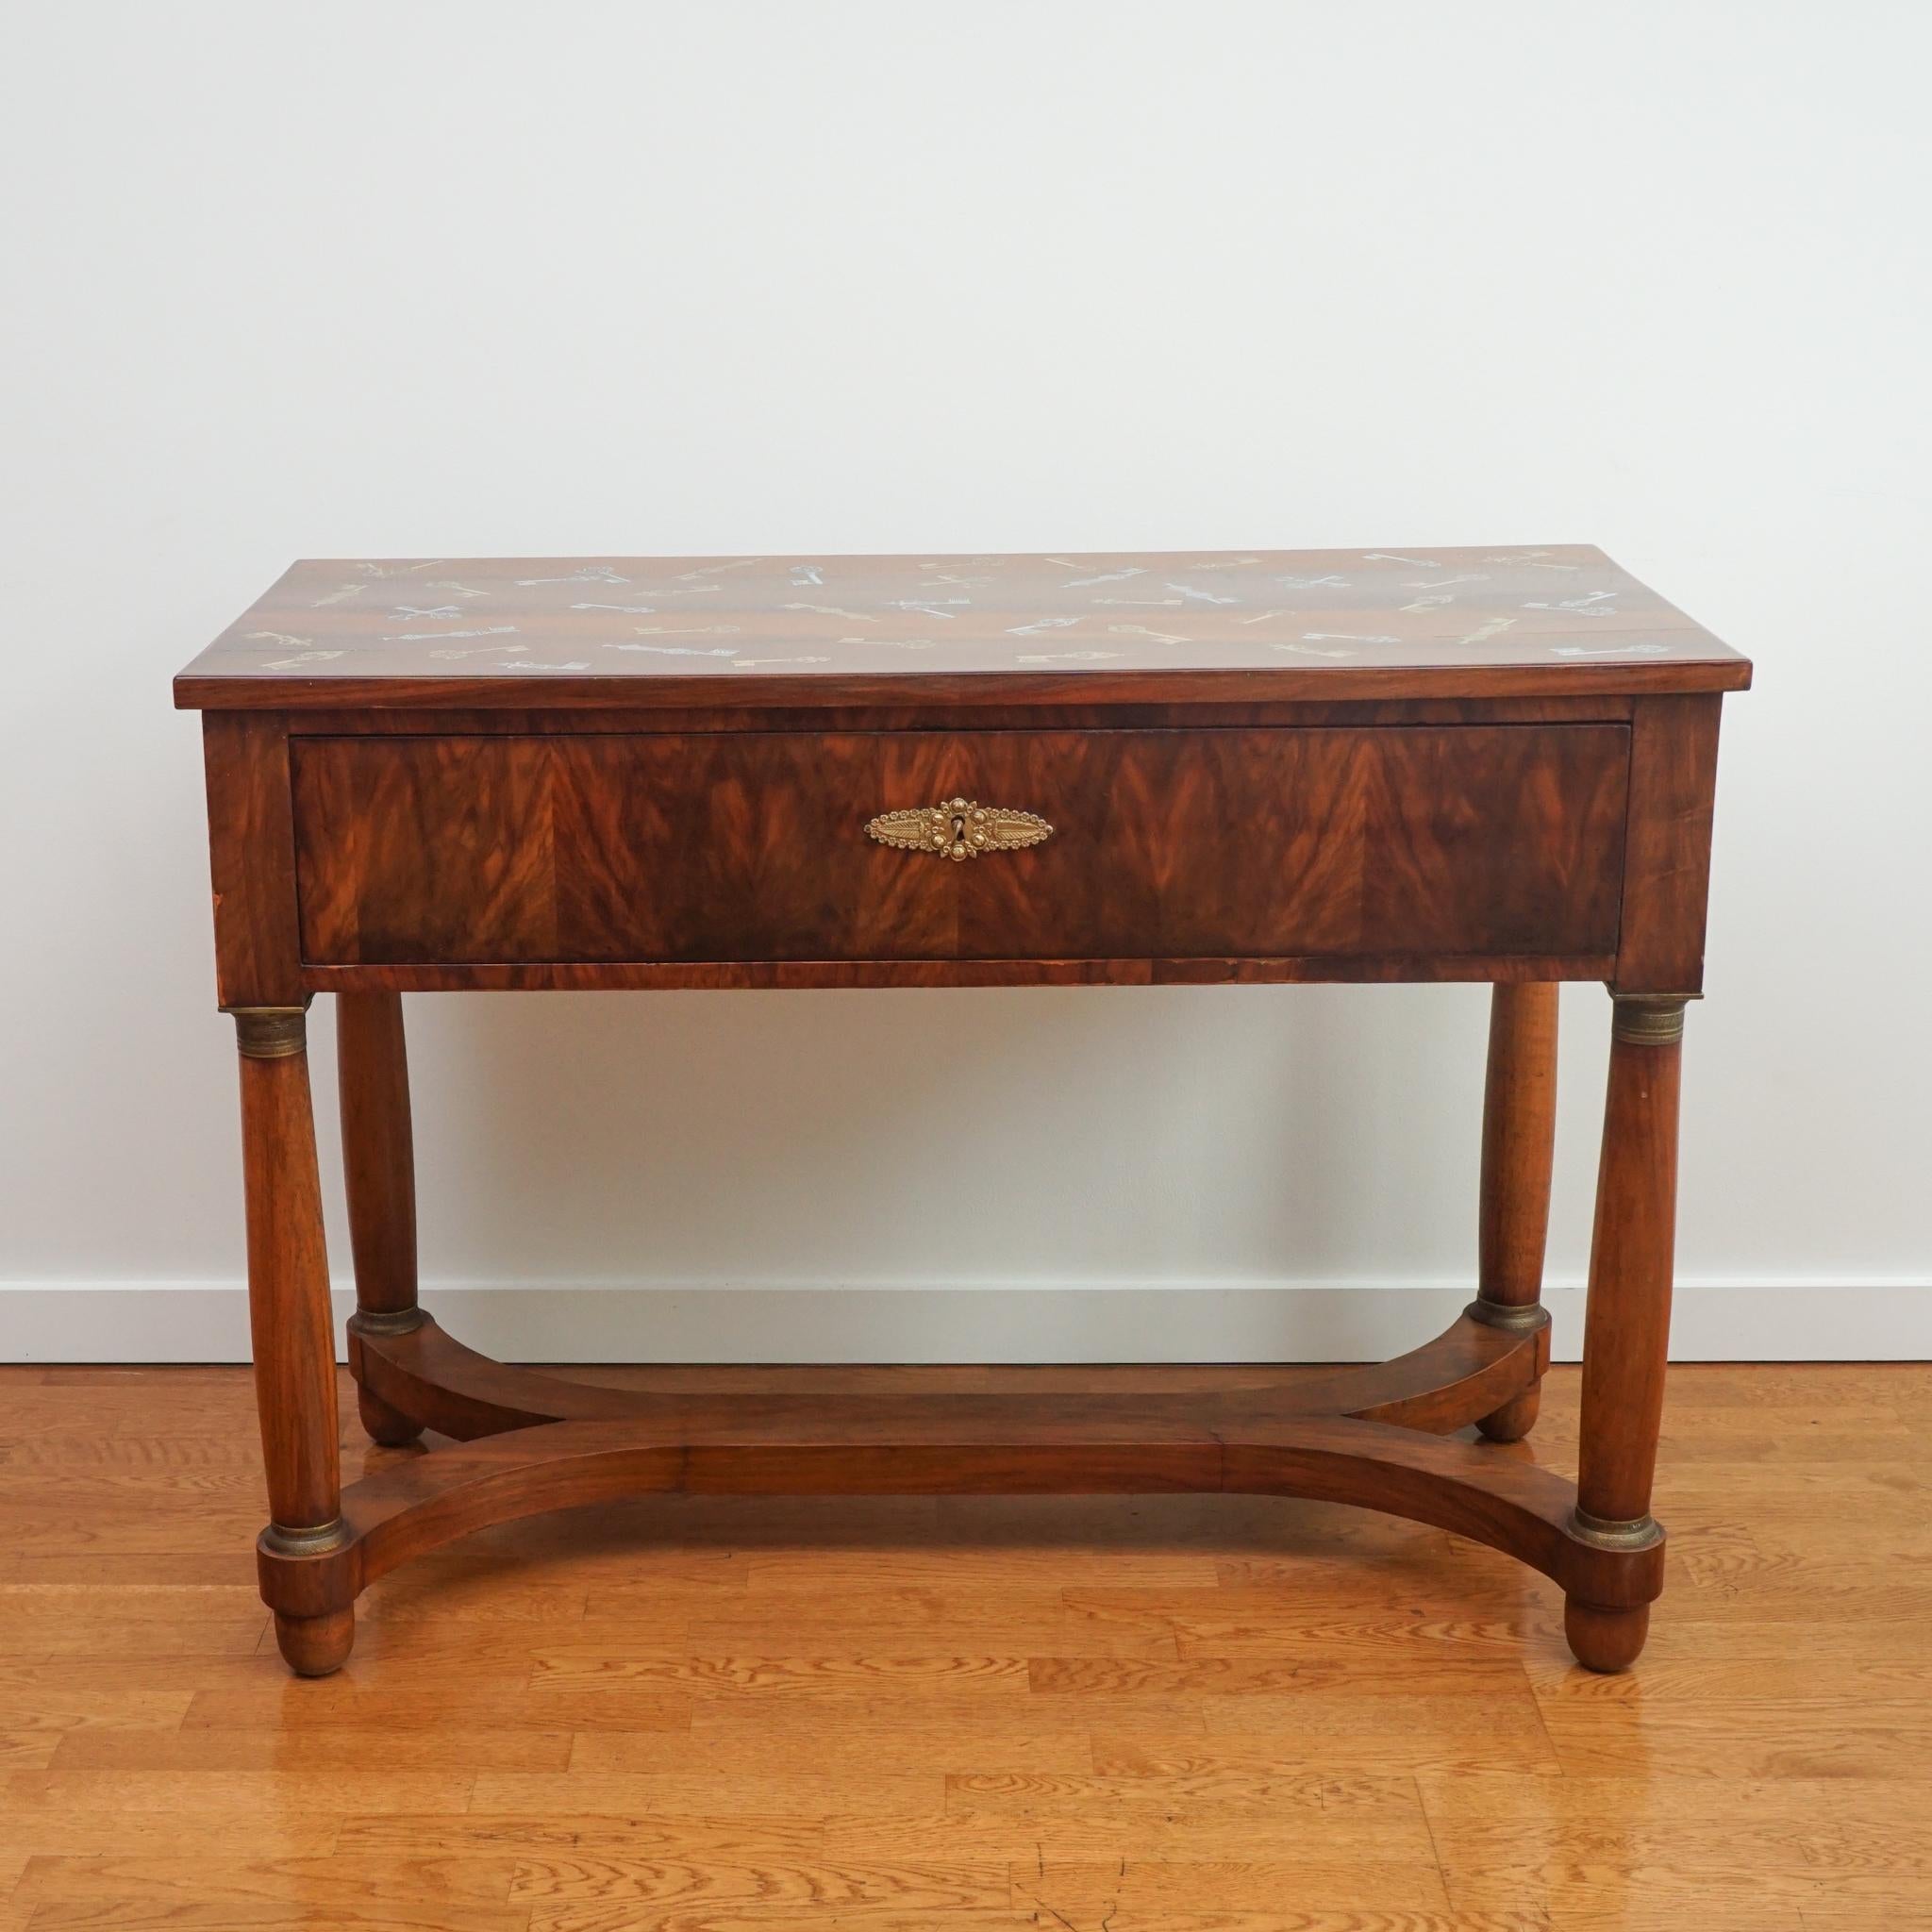 L'exquise table bureau antique, présentée ici, représente la première collaboration entre foley&cox HOME et Fornasetti. Le bureau a été acheté en Italie et décoré à la main par Fornasetti à l'aide d'un motif d'archives composé de clés squelettes